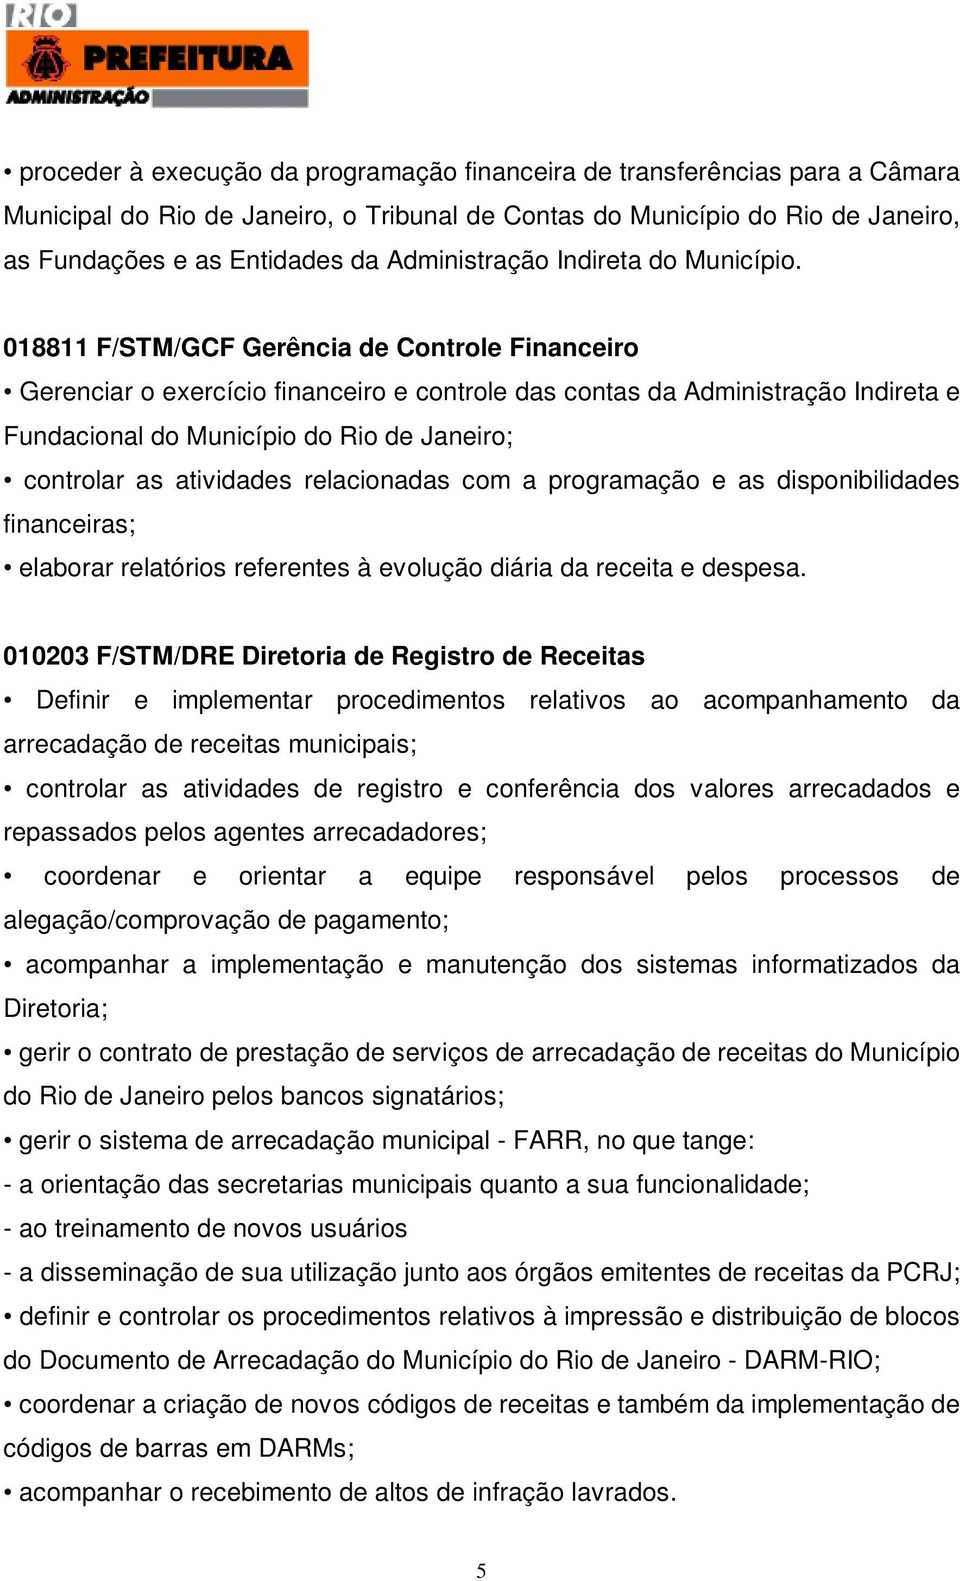 018811 F/STM/GCF Gerência de Controle Financeiro Gerenciar o exercício financeiro e controle das contas da Administração Indireta e Fundacional do Município do Rio de Janeiro; controlar as atividades